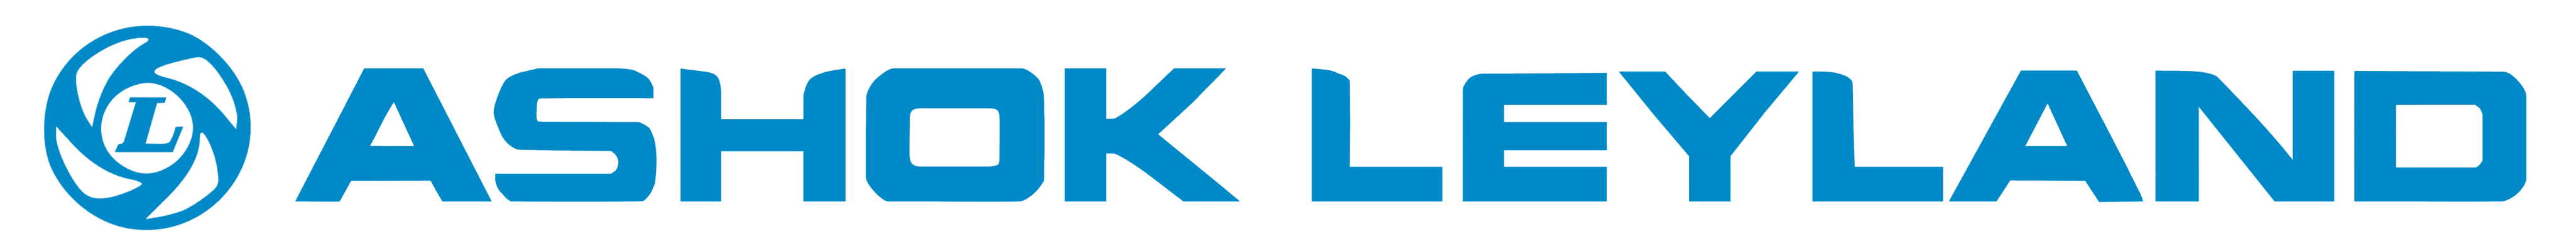 Ashok_Leyland_logo